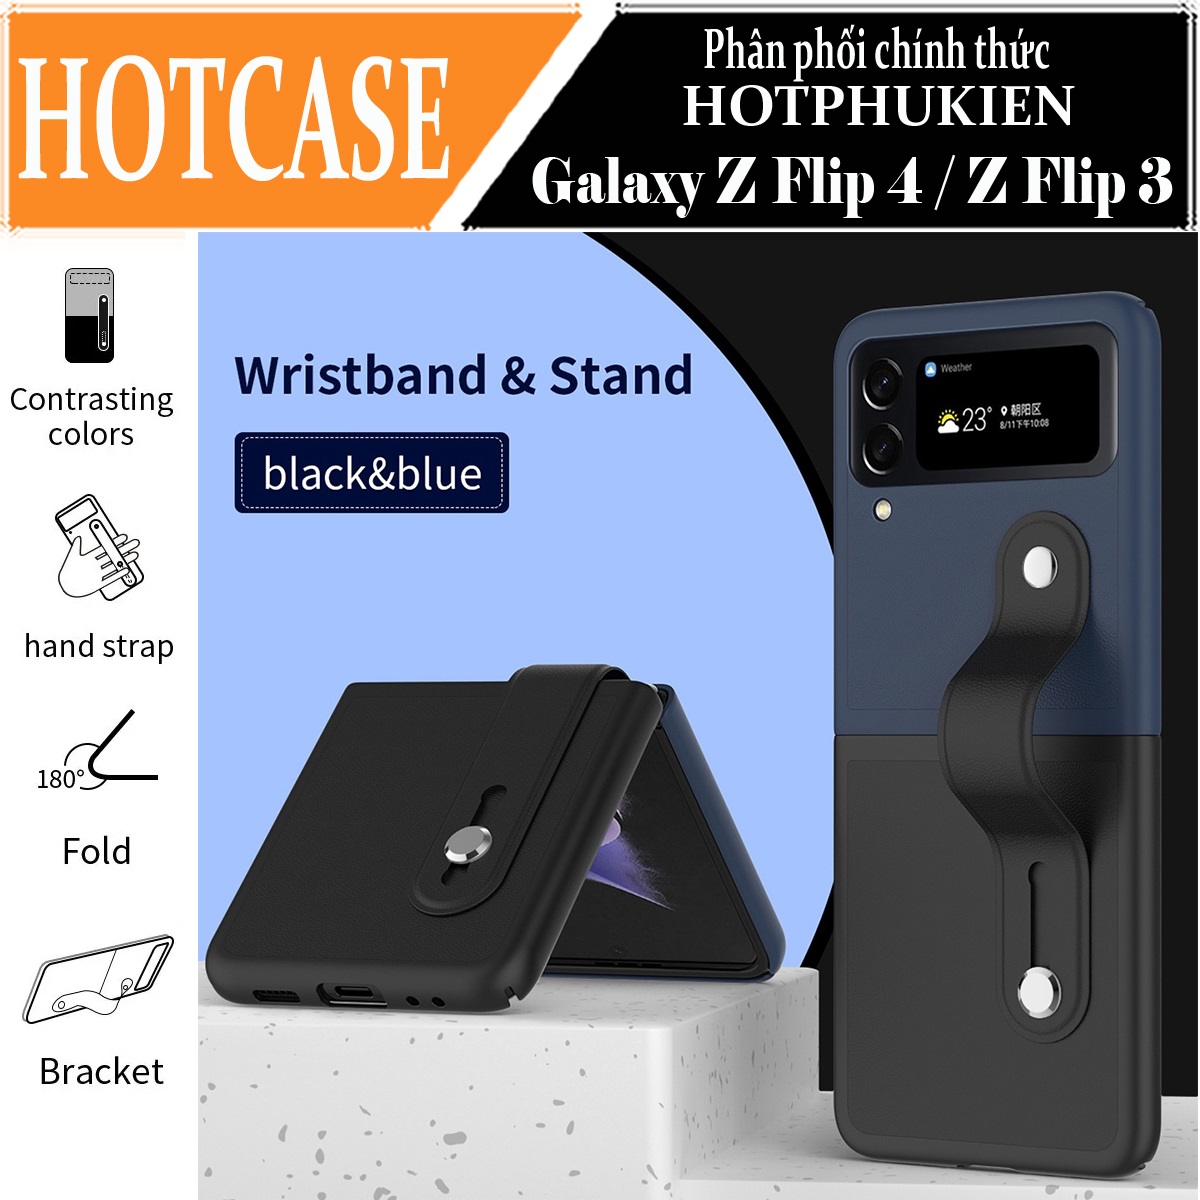 Ốp lưng đai đeo hand trap chống sốc cho Samsung Galaxy Z Flip 3 hiệu HOTCASE Wristband Stand Phone Case - chất liệu cao cấp, thiết kế thời trang sang trọng có đai đeo tay an toàn